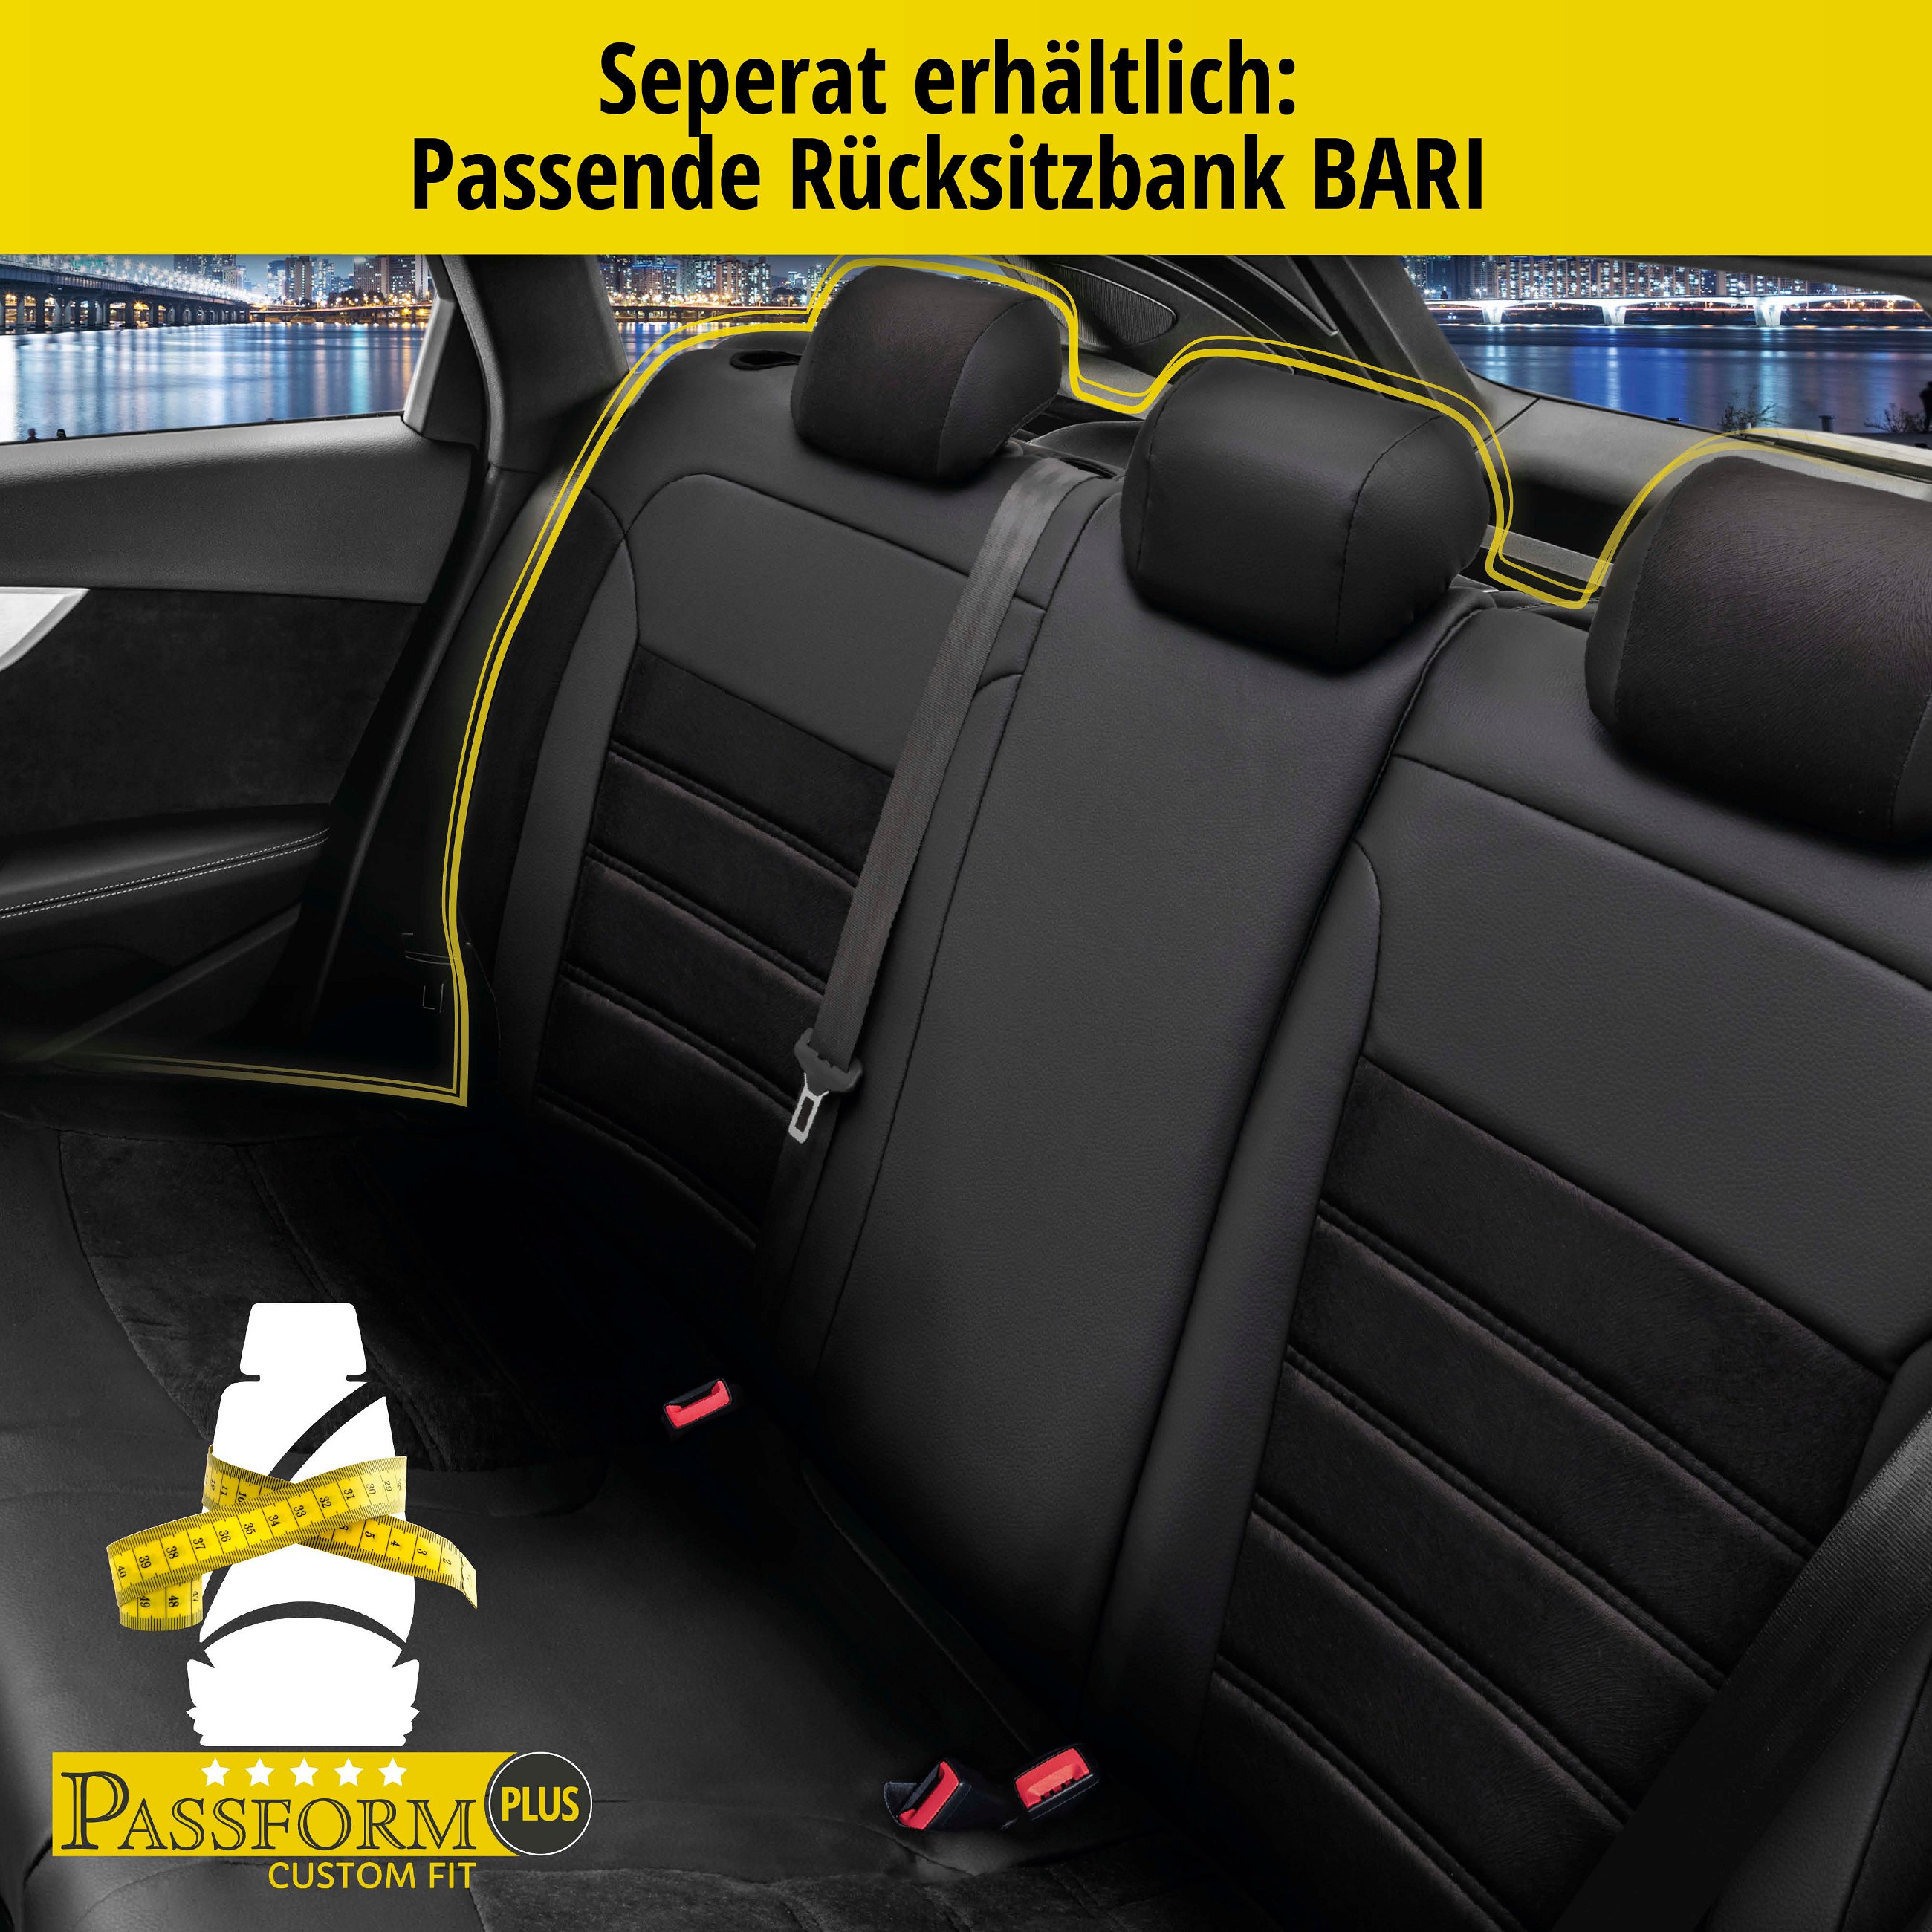 Passform Sitzbezug Bari für Mercedes-Benz C-Klasse (W204) 01/2007-01/2015, 2 Einzelsitzbezüge für Normalsitze